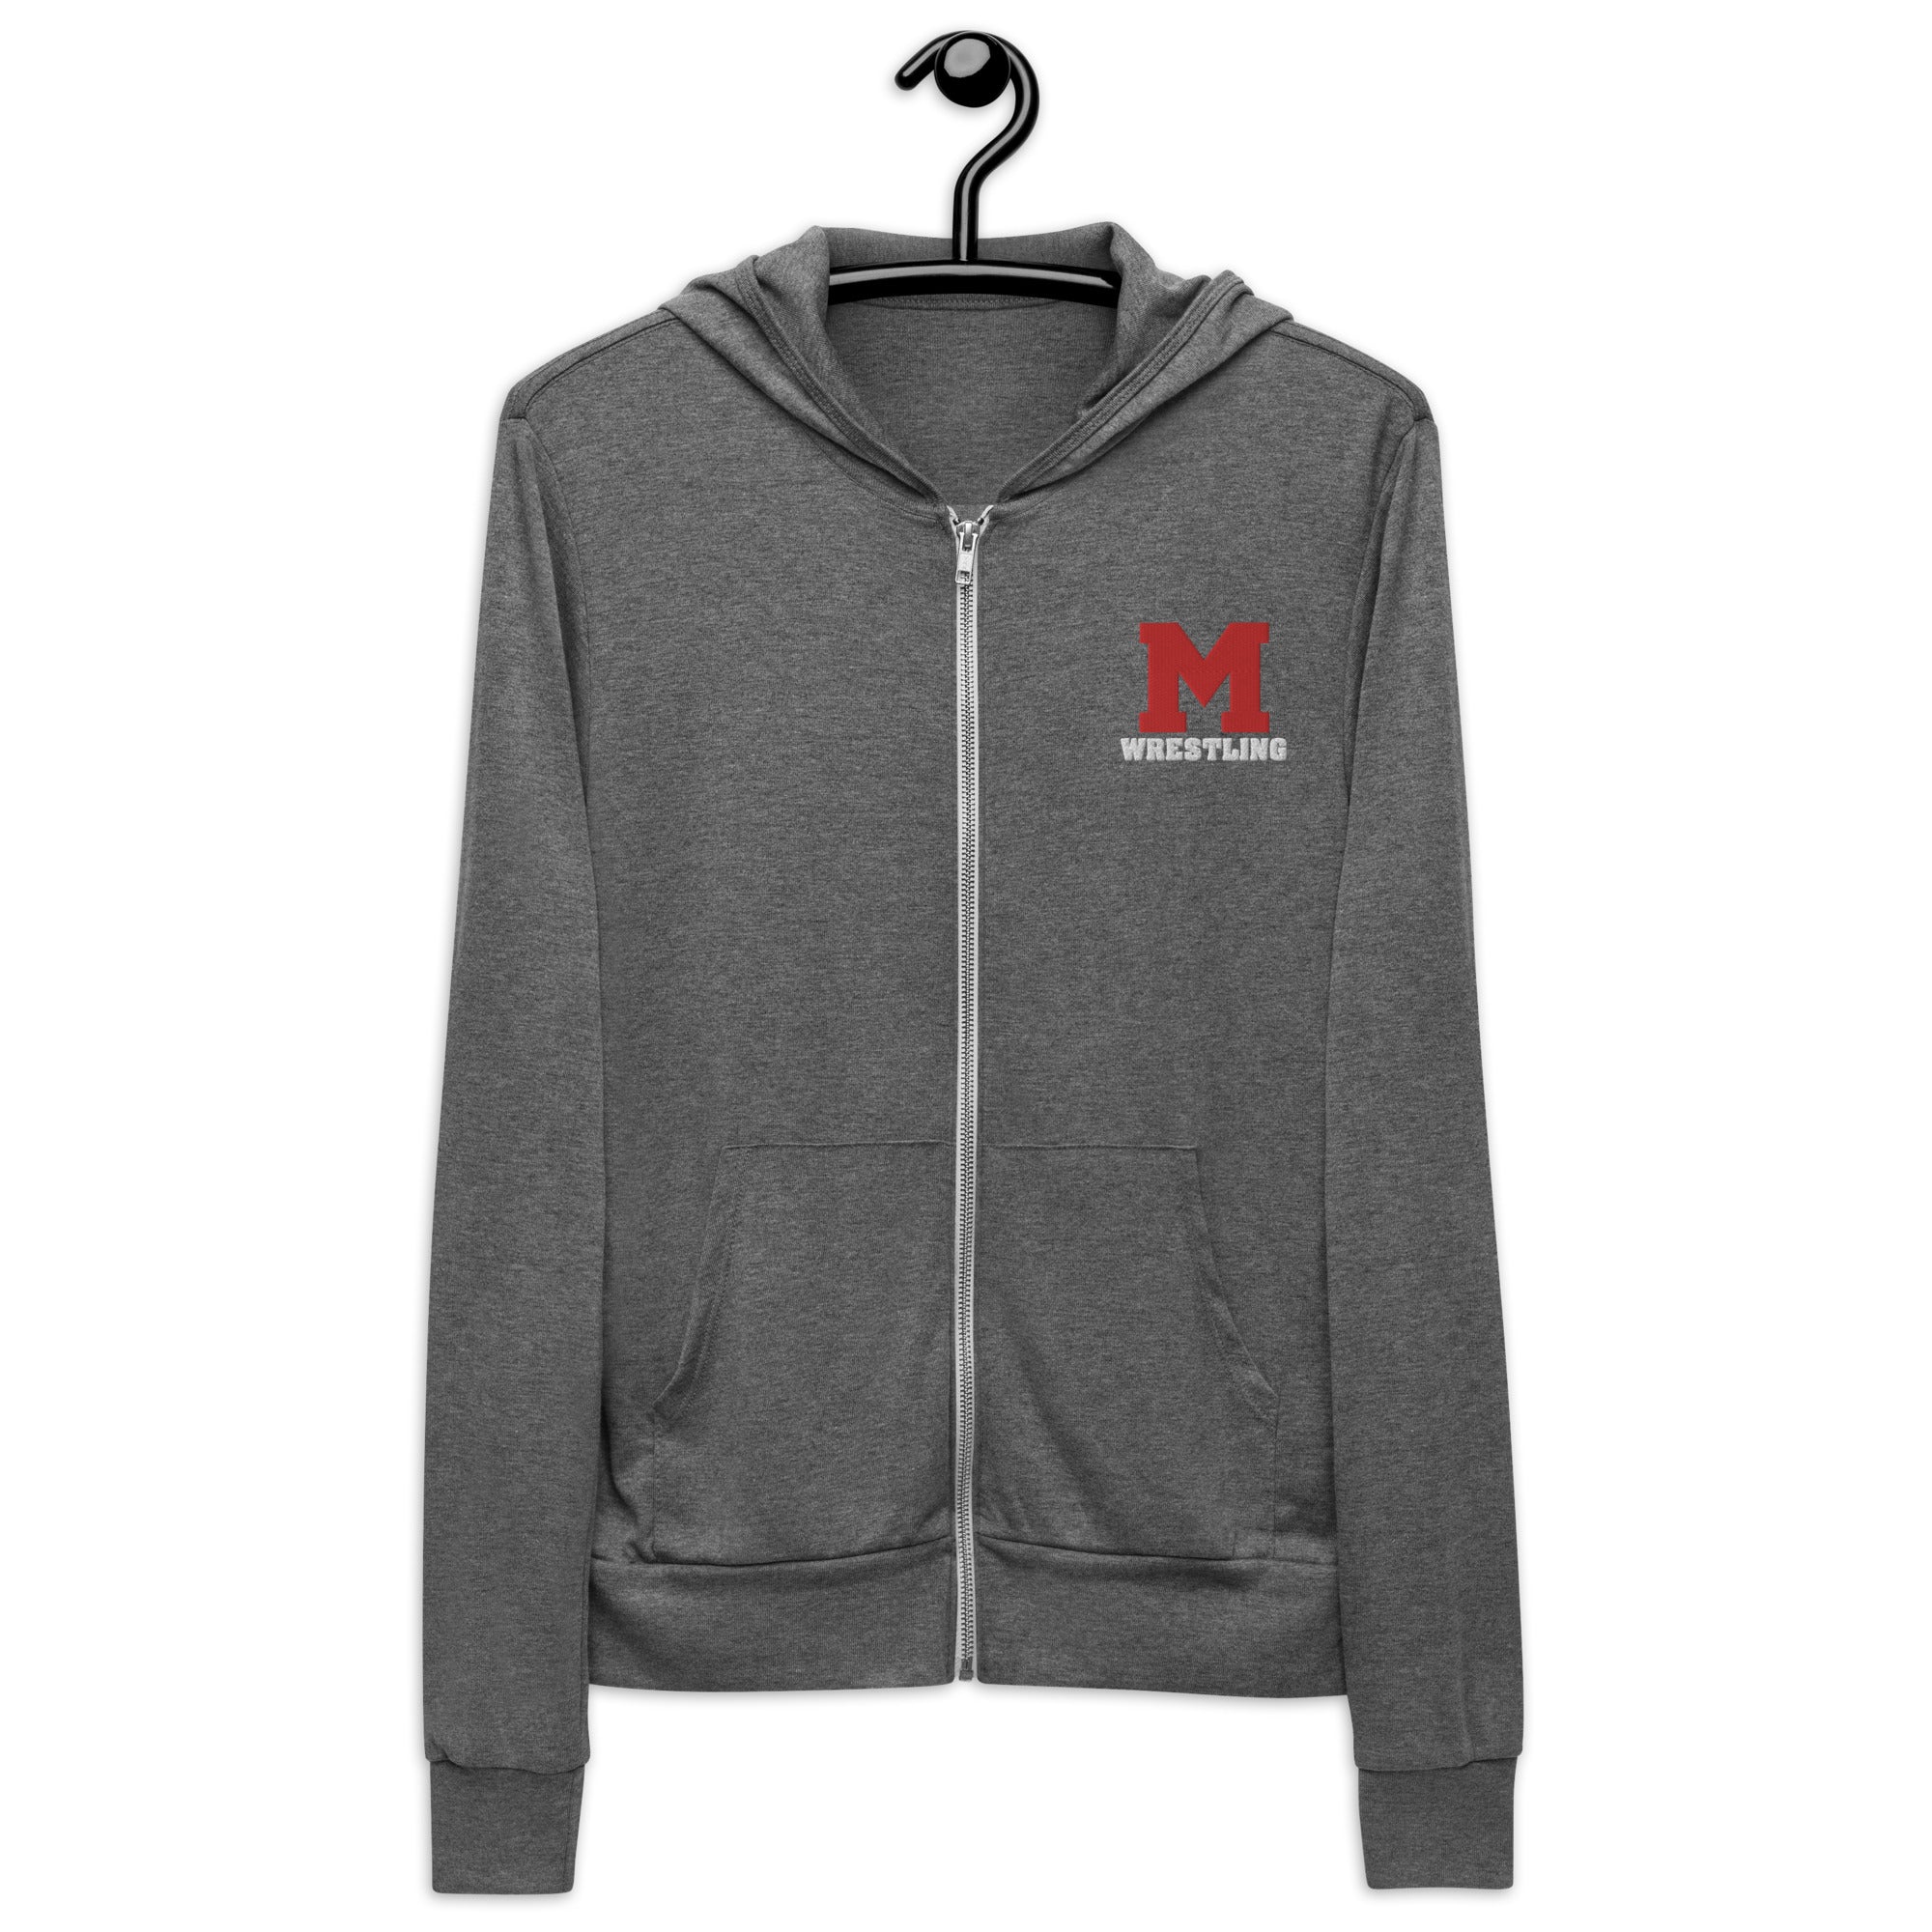 M Wrestling Unisex zip hoodie